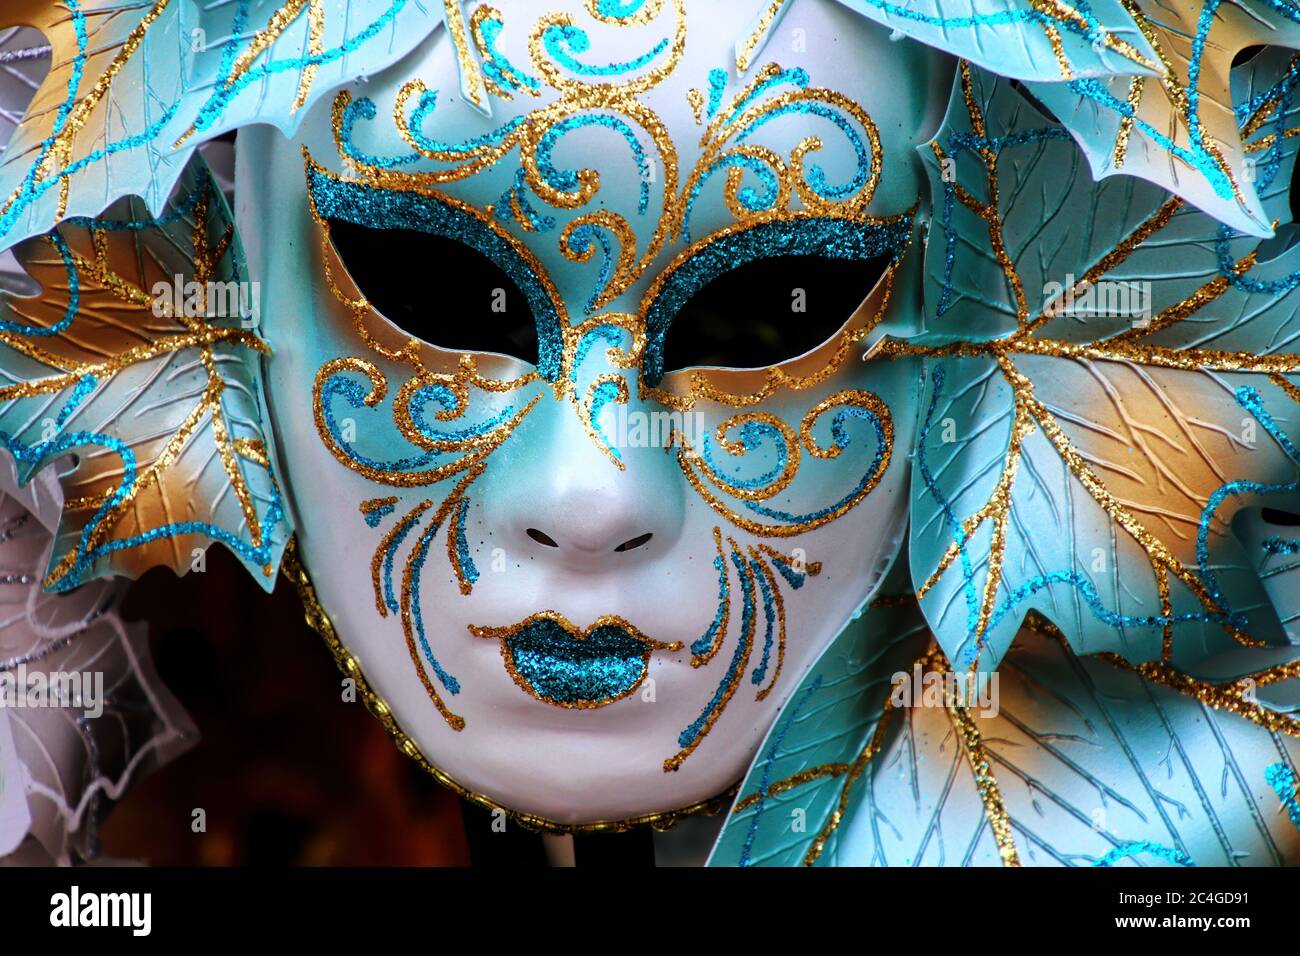 Maschera sul display in un negozio di souvenir in strada di Venezia, Italia. Le maschere sono sempre state una caratteristica importante del famoso carnevale veneziano. Foto Stock